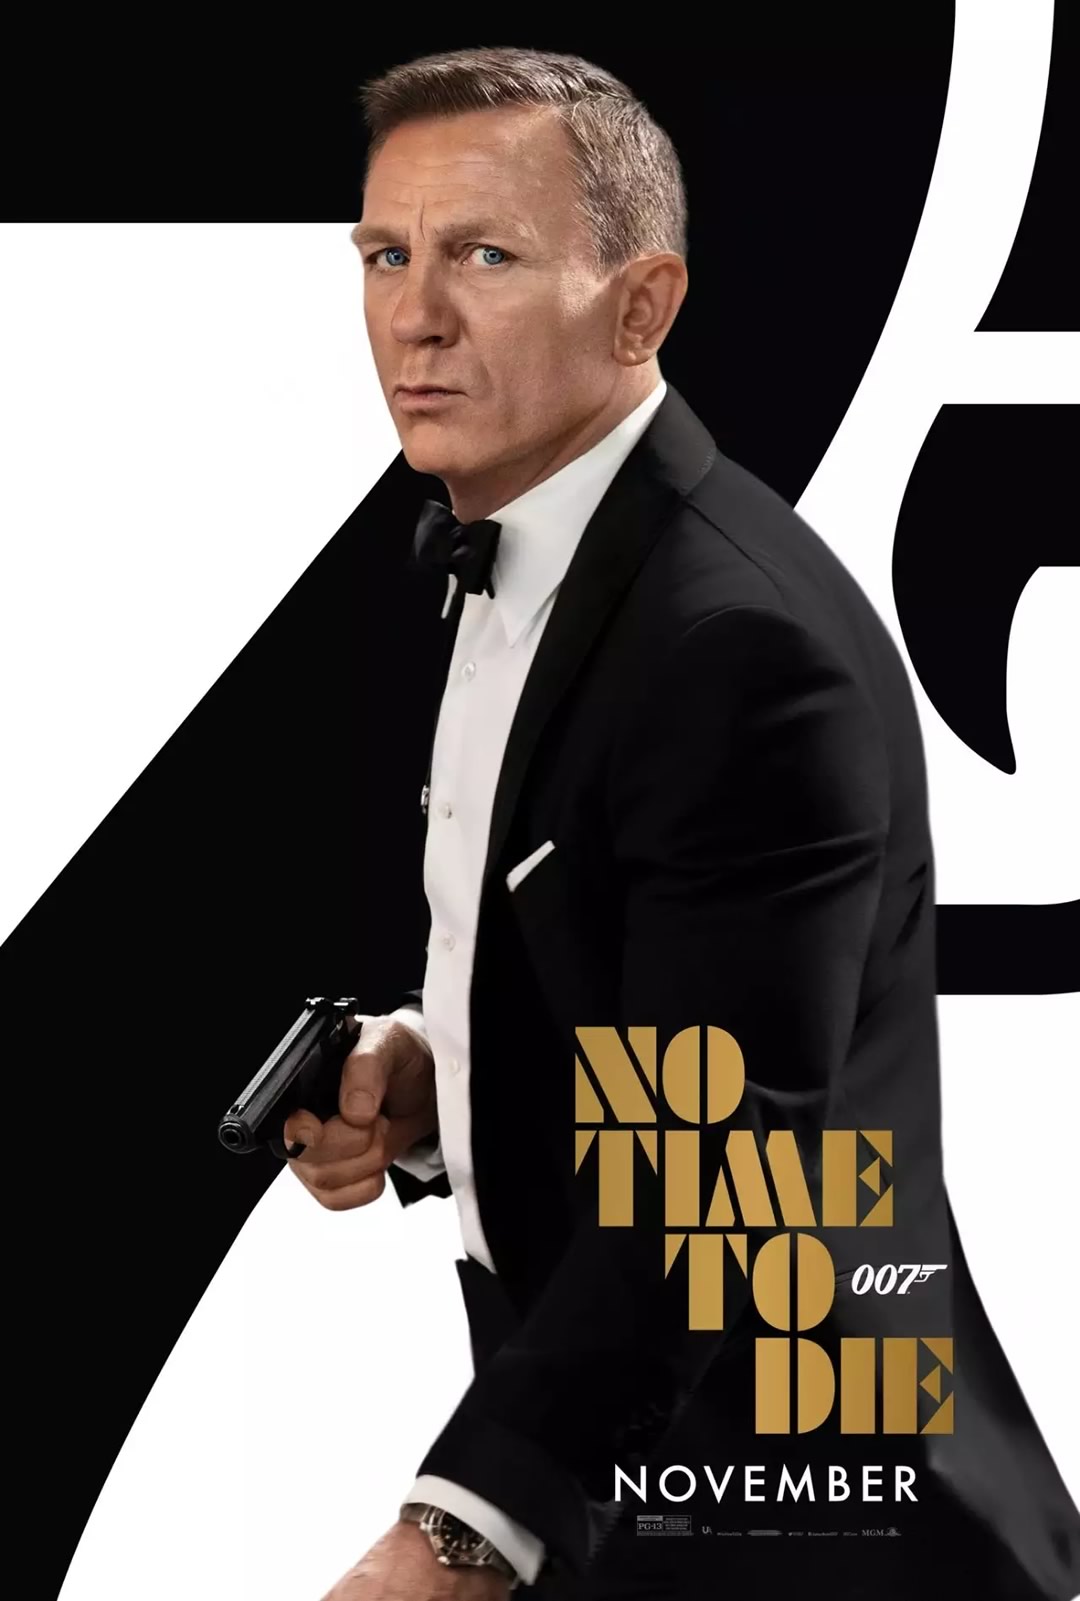 007 - Sem Tempo Para Morrer - James Bond em apuros no novo trailer divulgado pela Universal Pictures / MGM